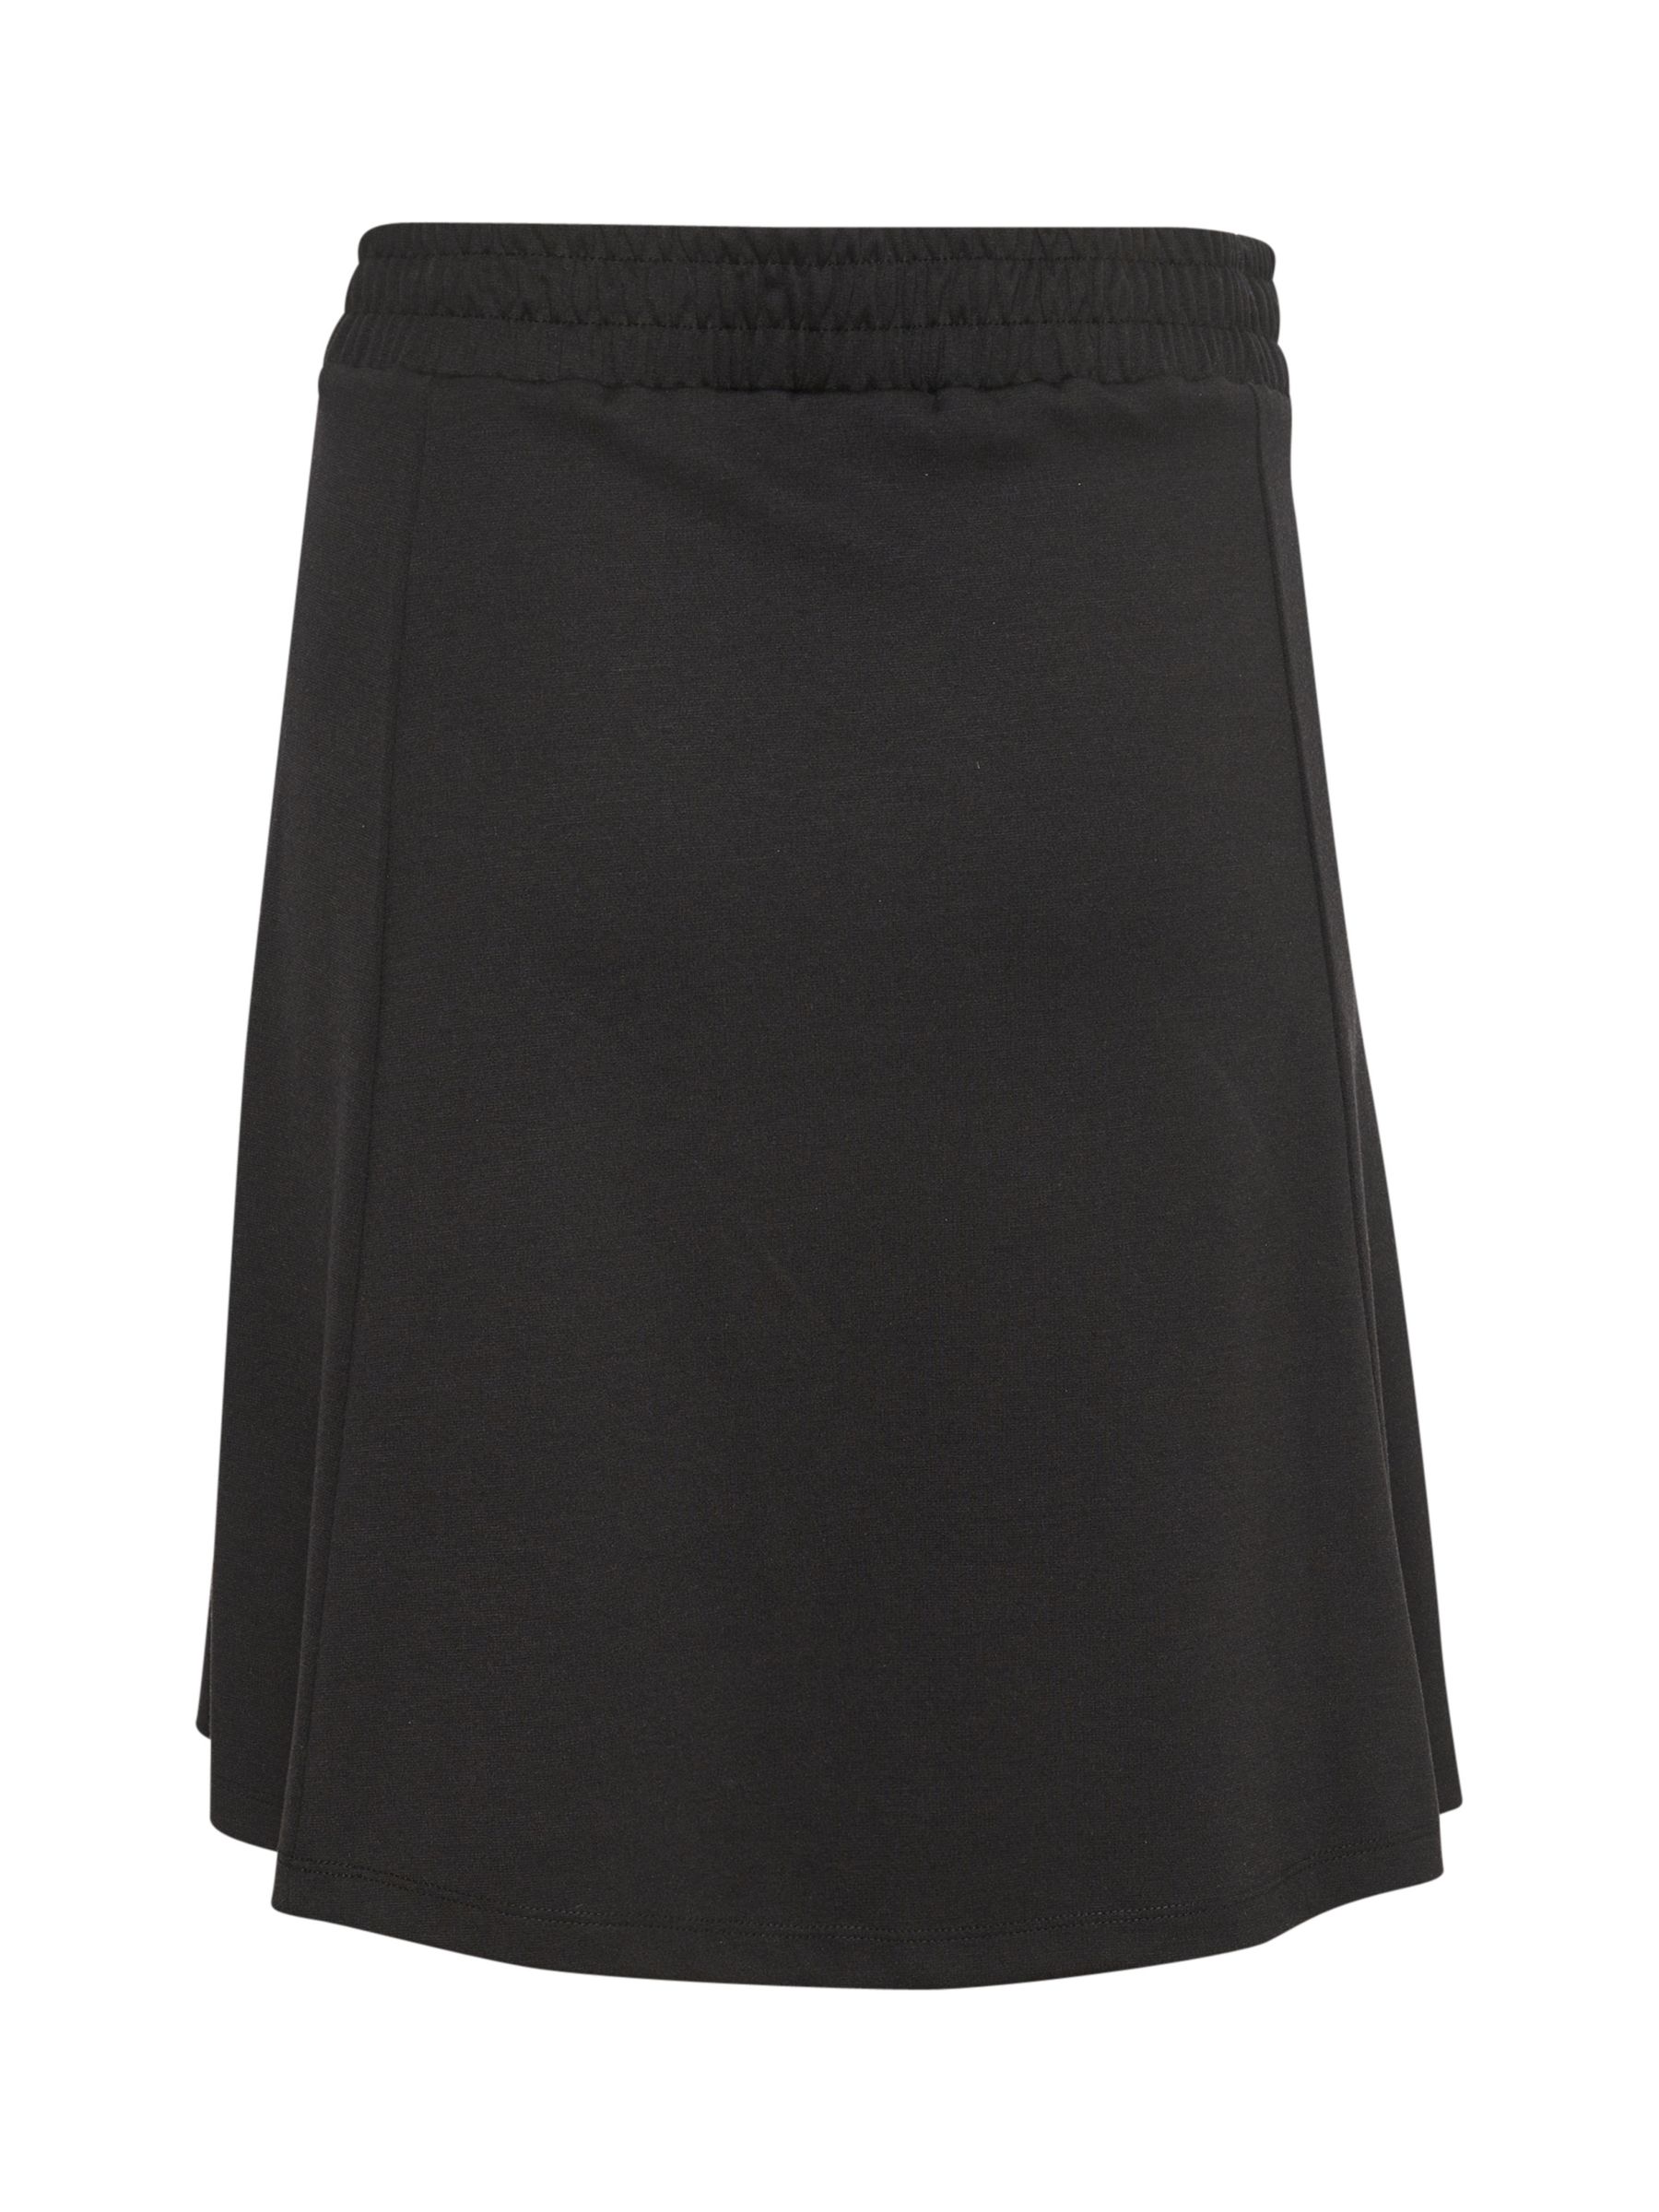 KAFFE Jolen Jersey Skirt, Black